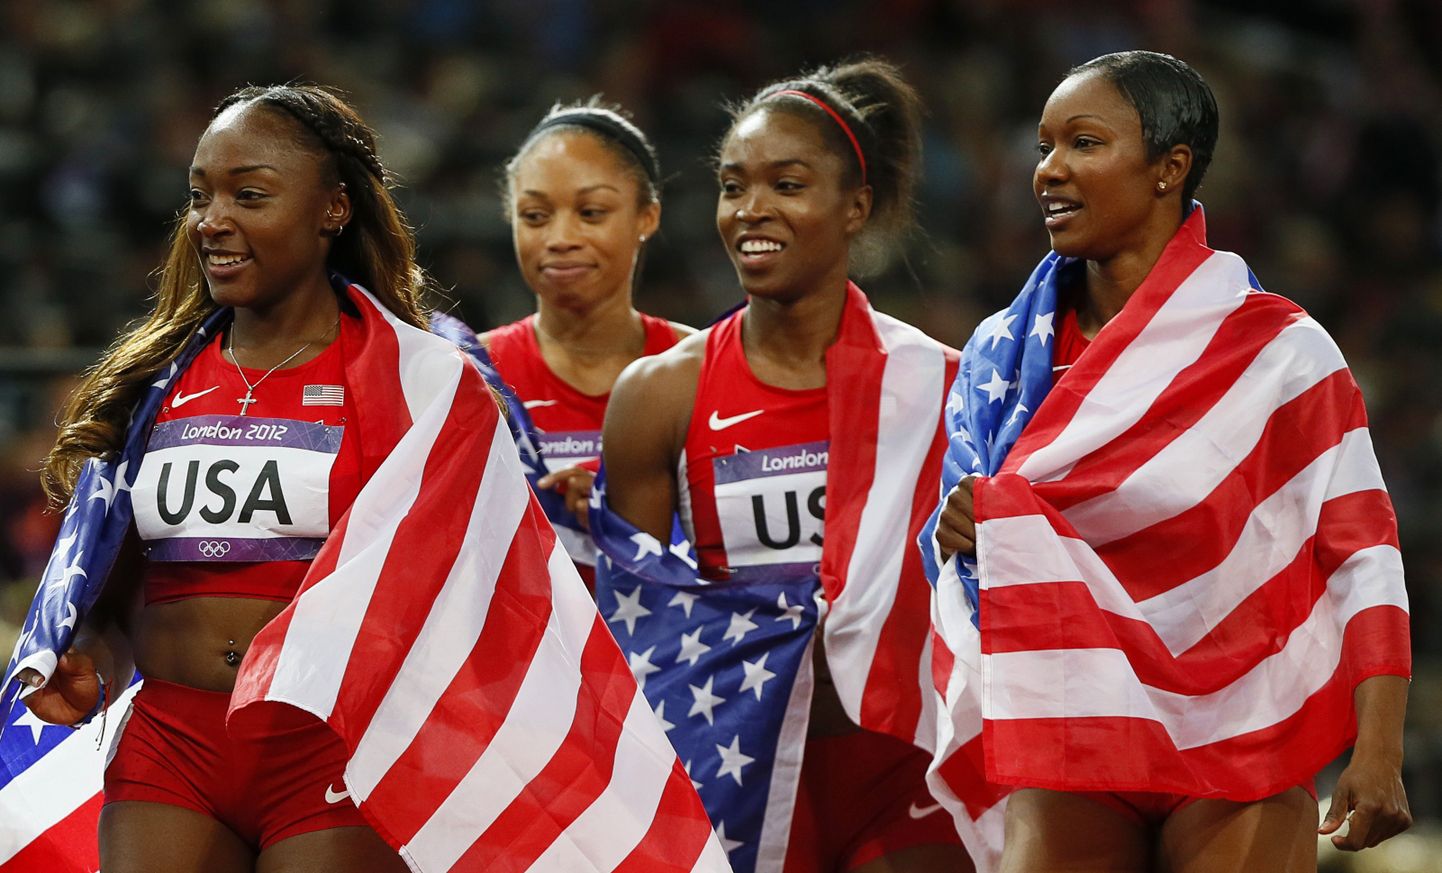 USA kuldne teatenelik: vasakult Bianca Knight, Allyson Felix, Tianna Madison ja Carmelita Jeter pärast olümpiafinaali.